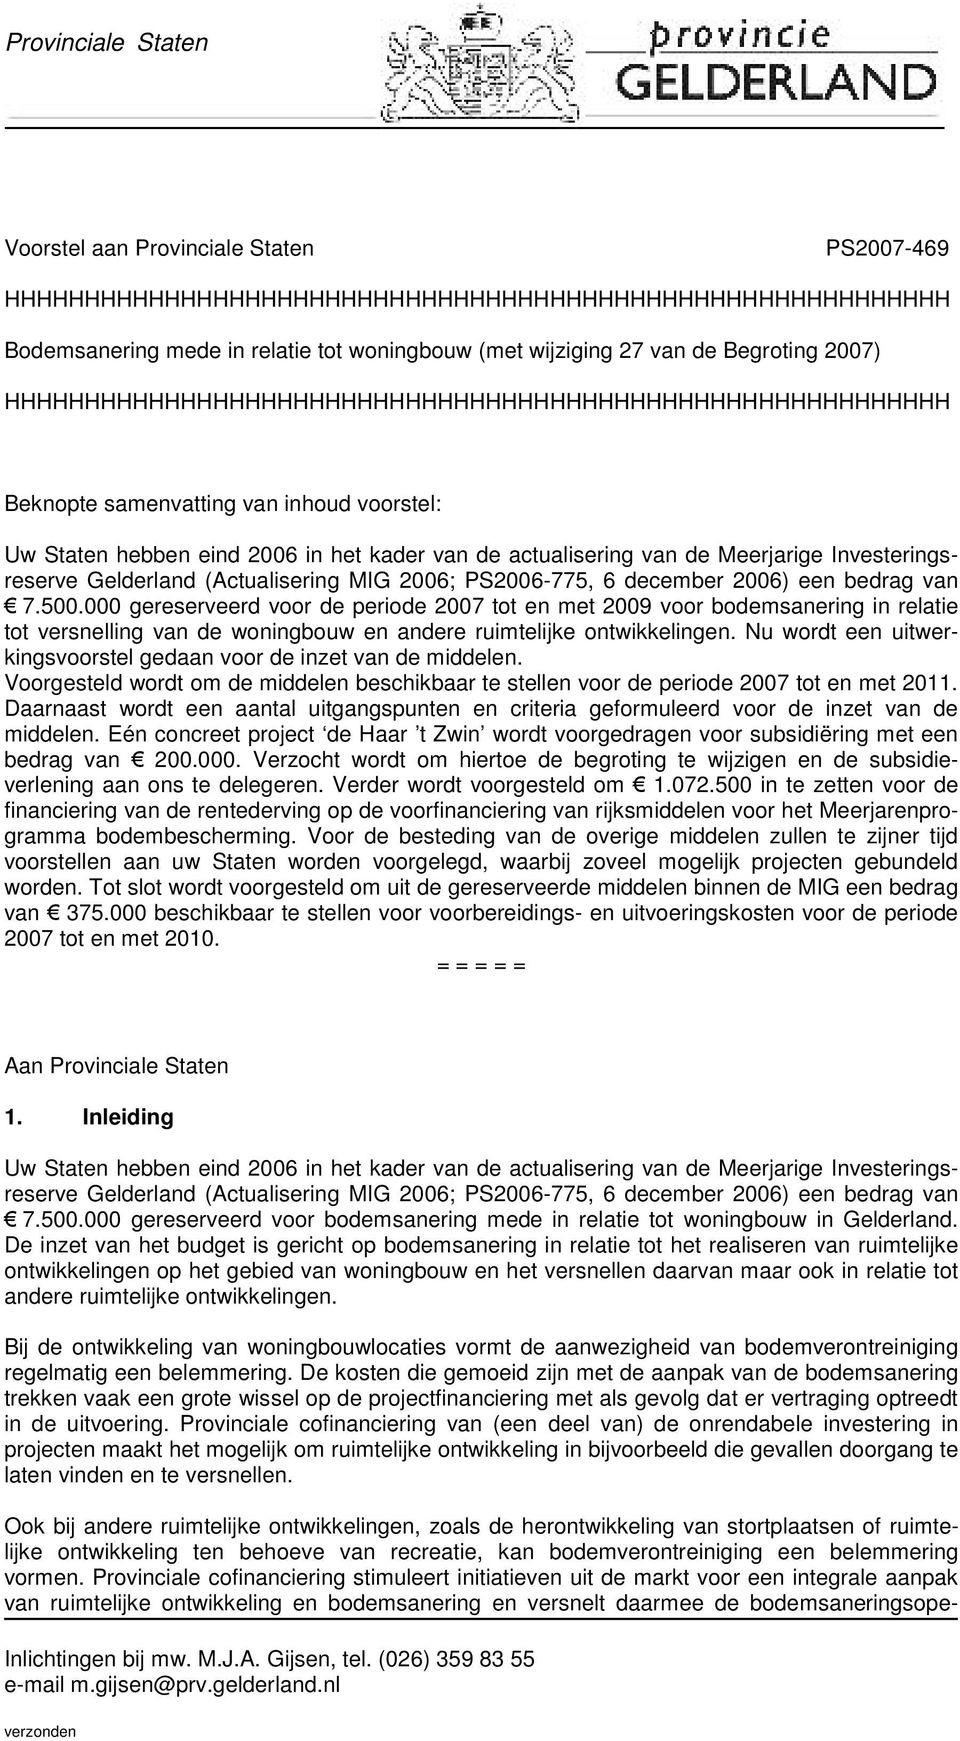 Investeringsreserve Gelderland (Actualisering MIG 2006; PS2006-775, 6 december 2006) een bedrag van 7.500.